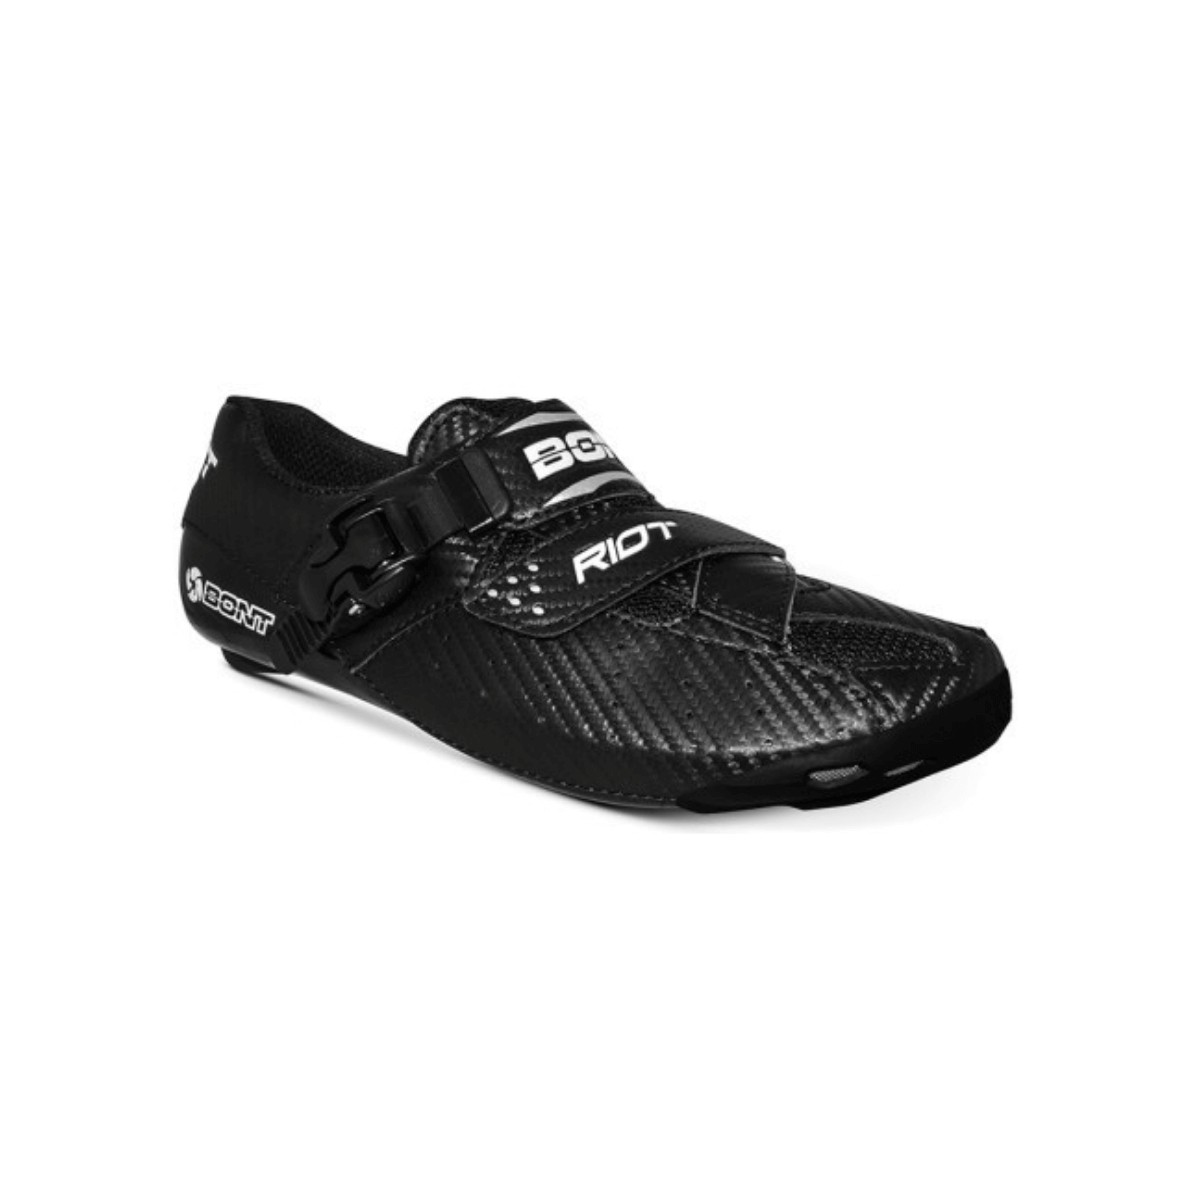 Photos - Cycling Shoes BONT Riot Shoes Black, Size 38 - EUR RIOT02-38 